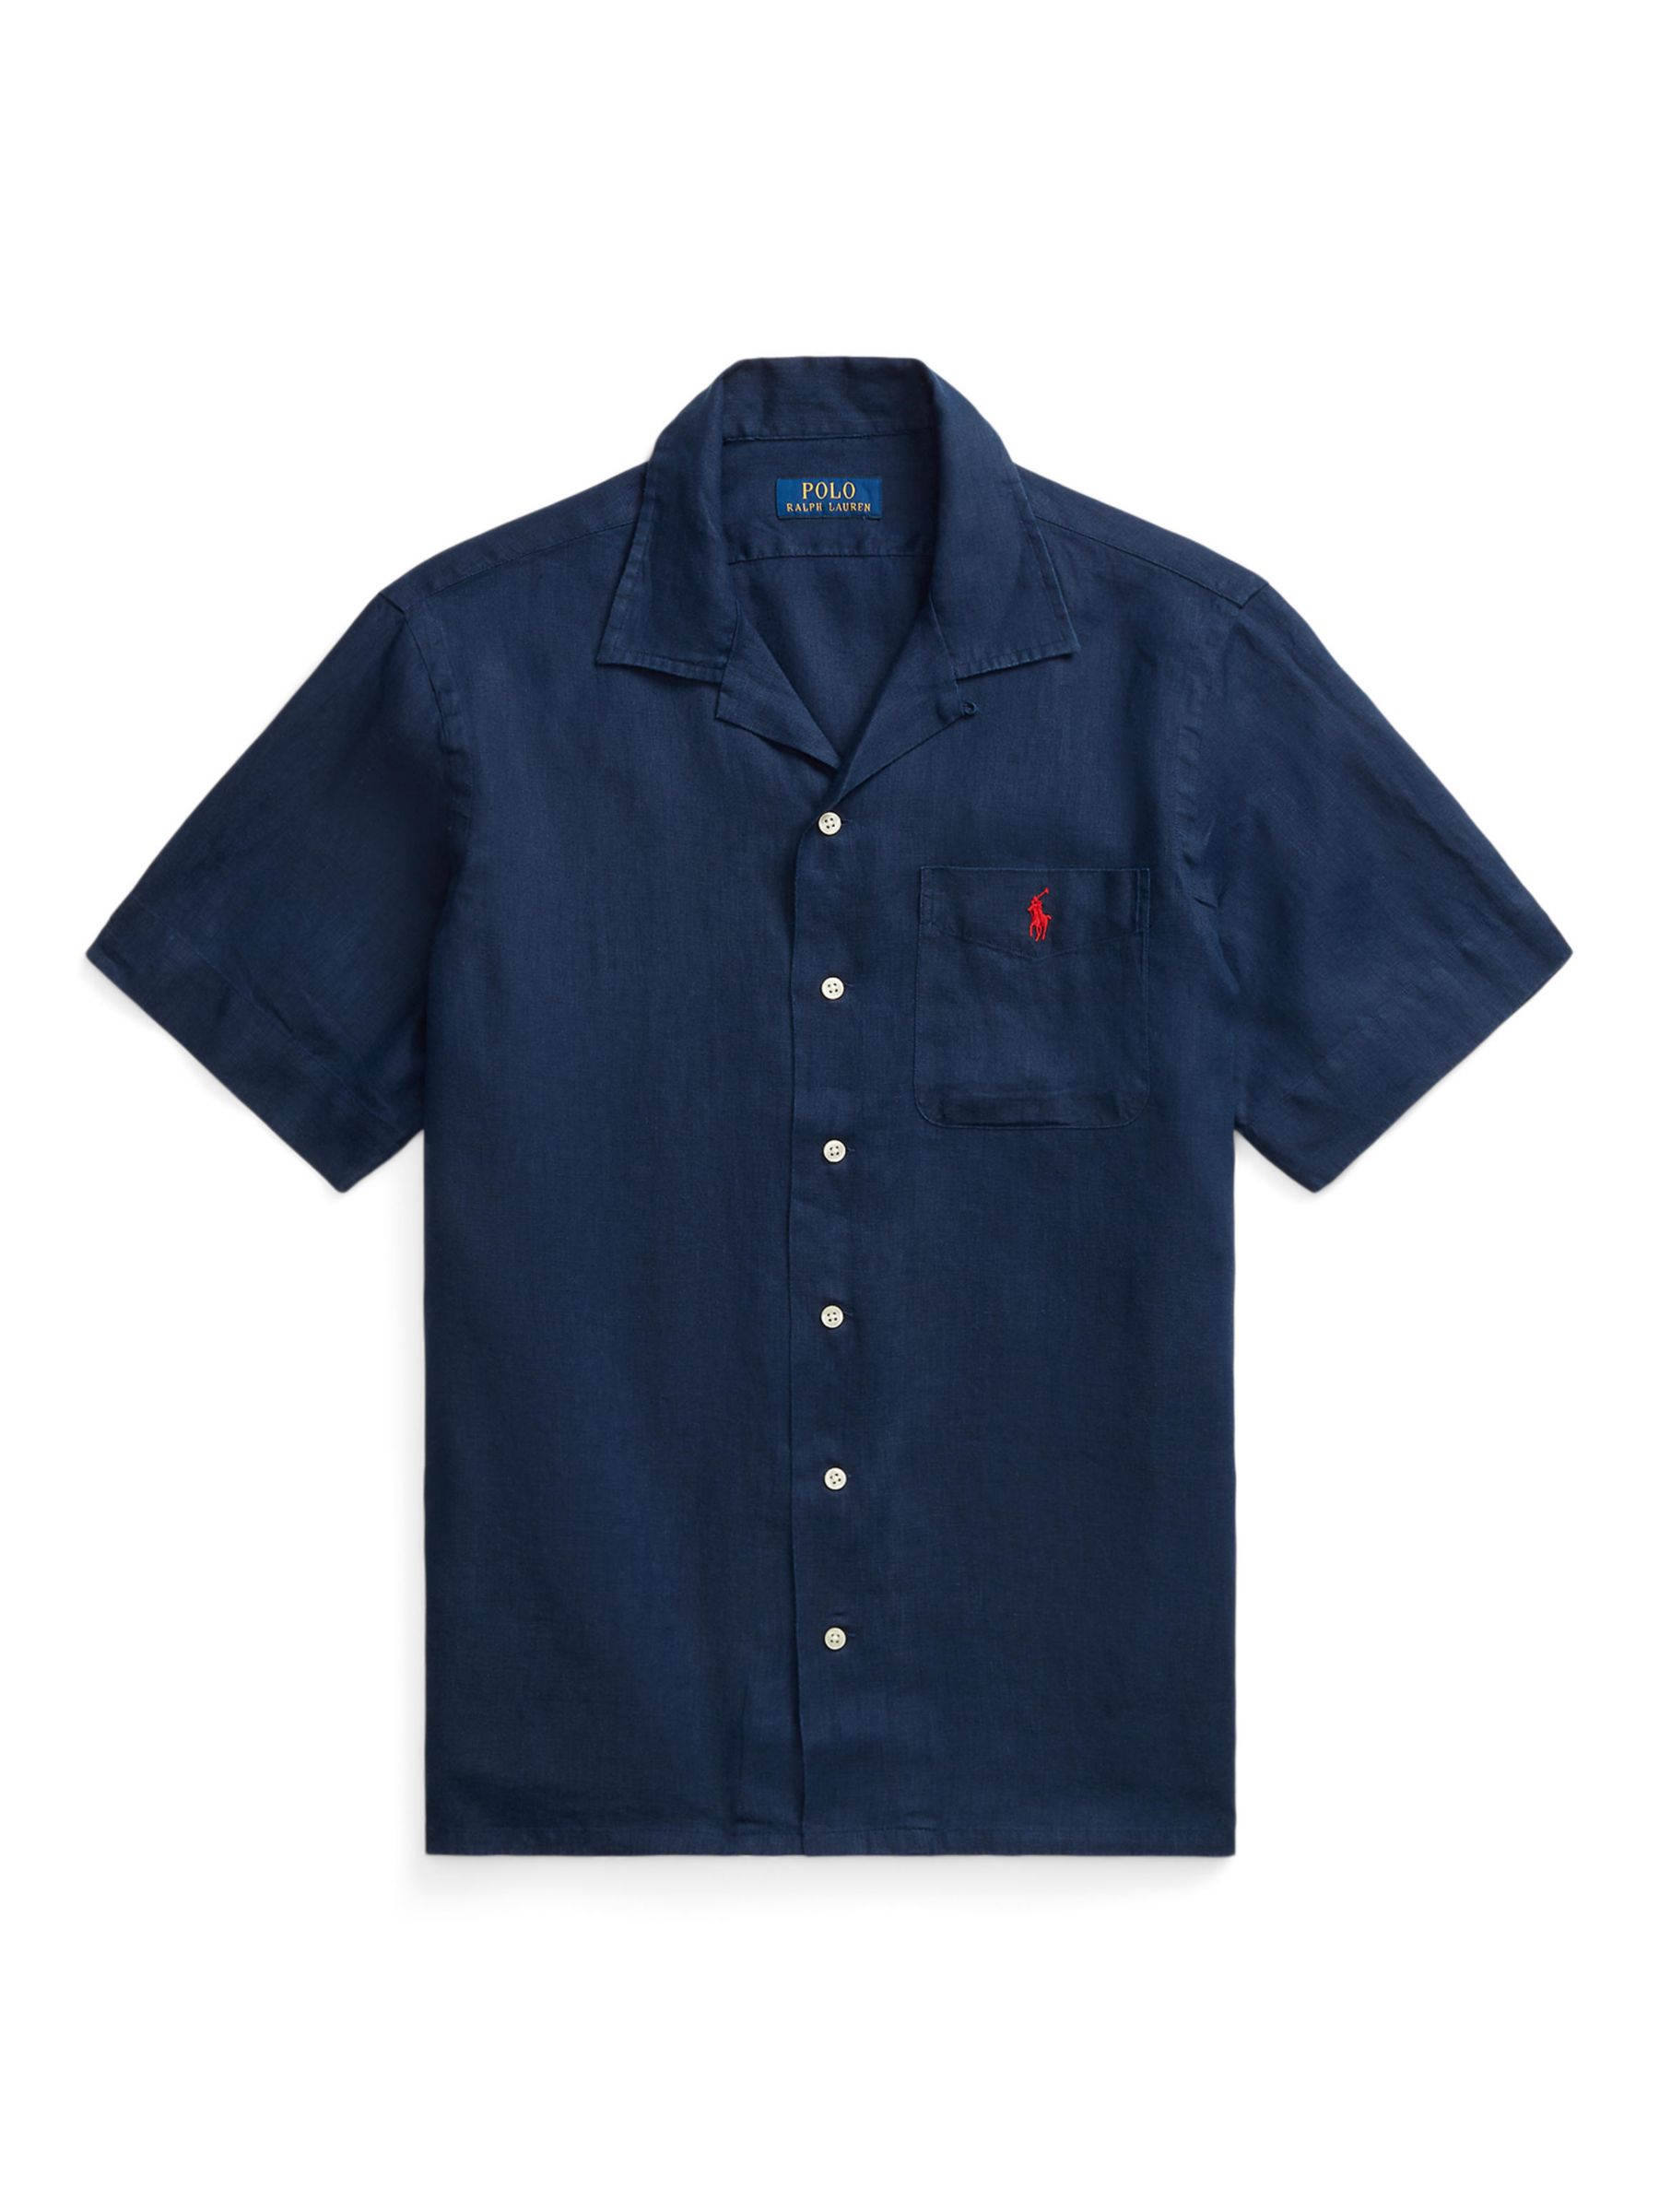 Polo Ralph Lauren Linen Shirt, Newport Navy, S